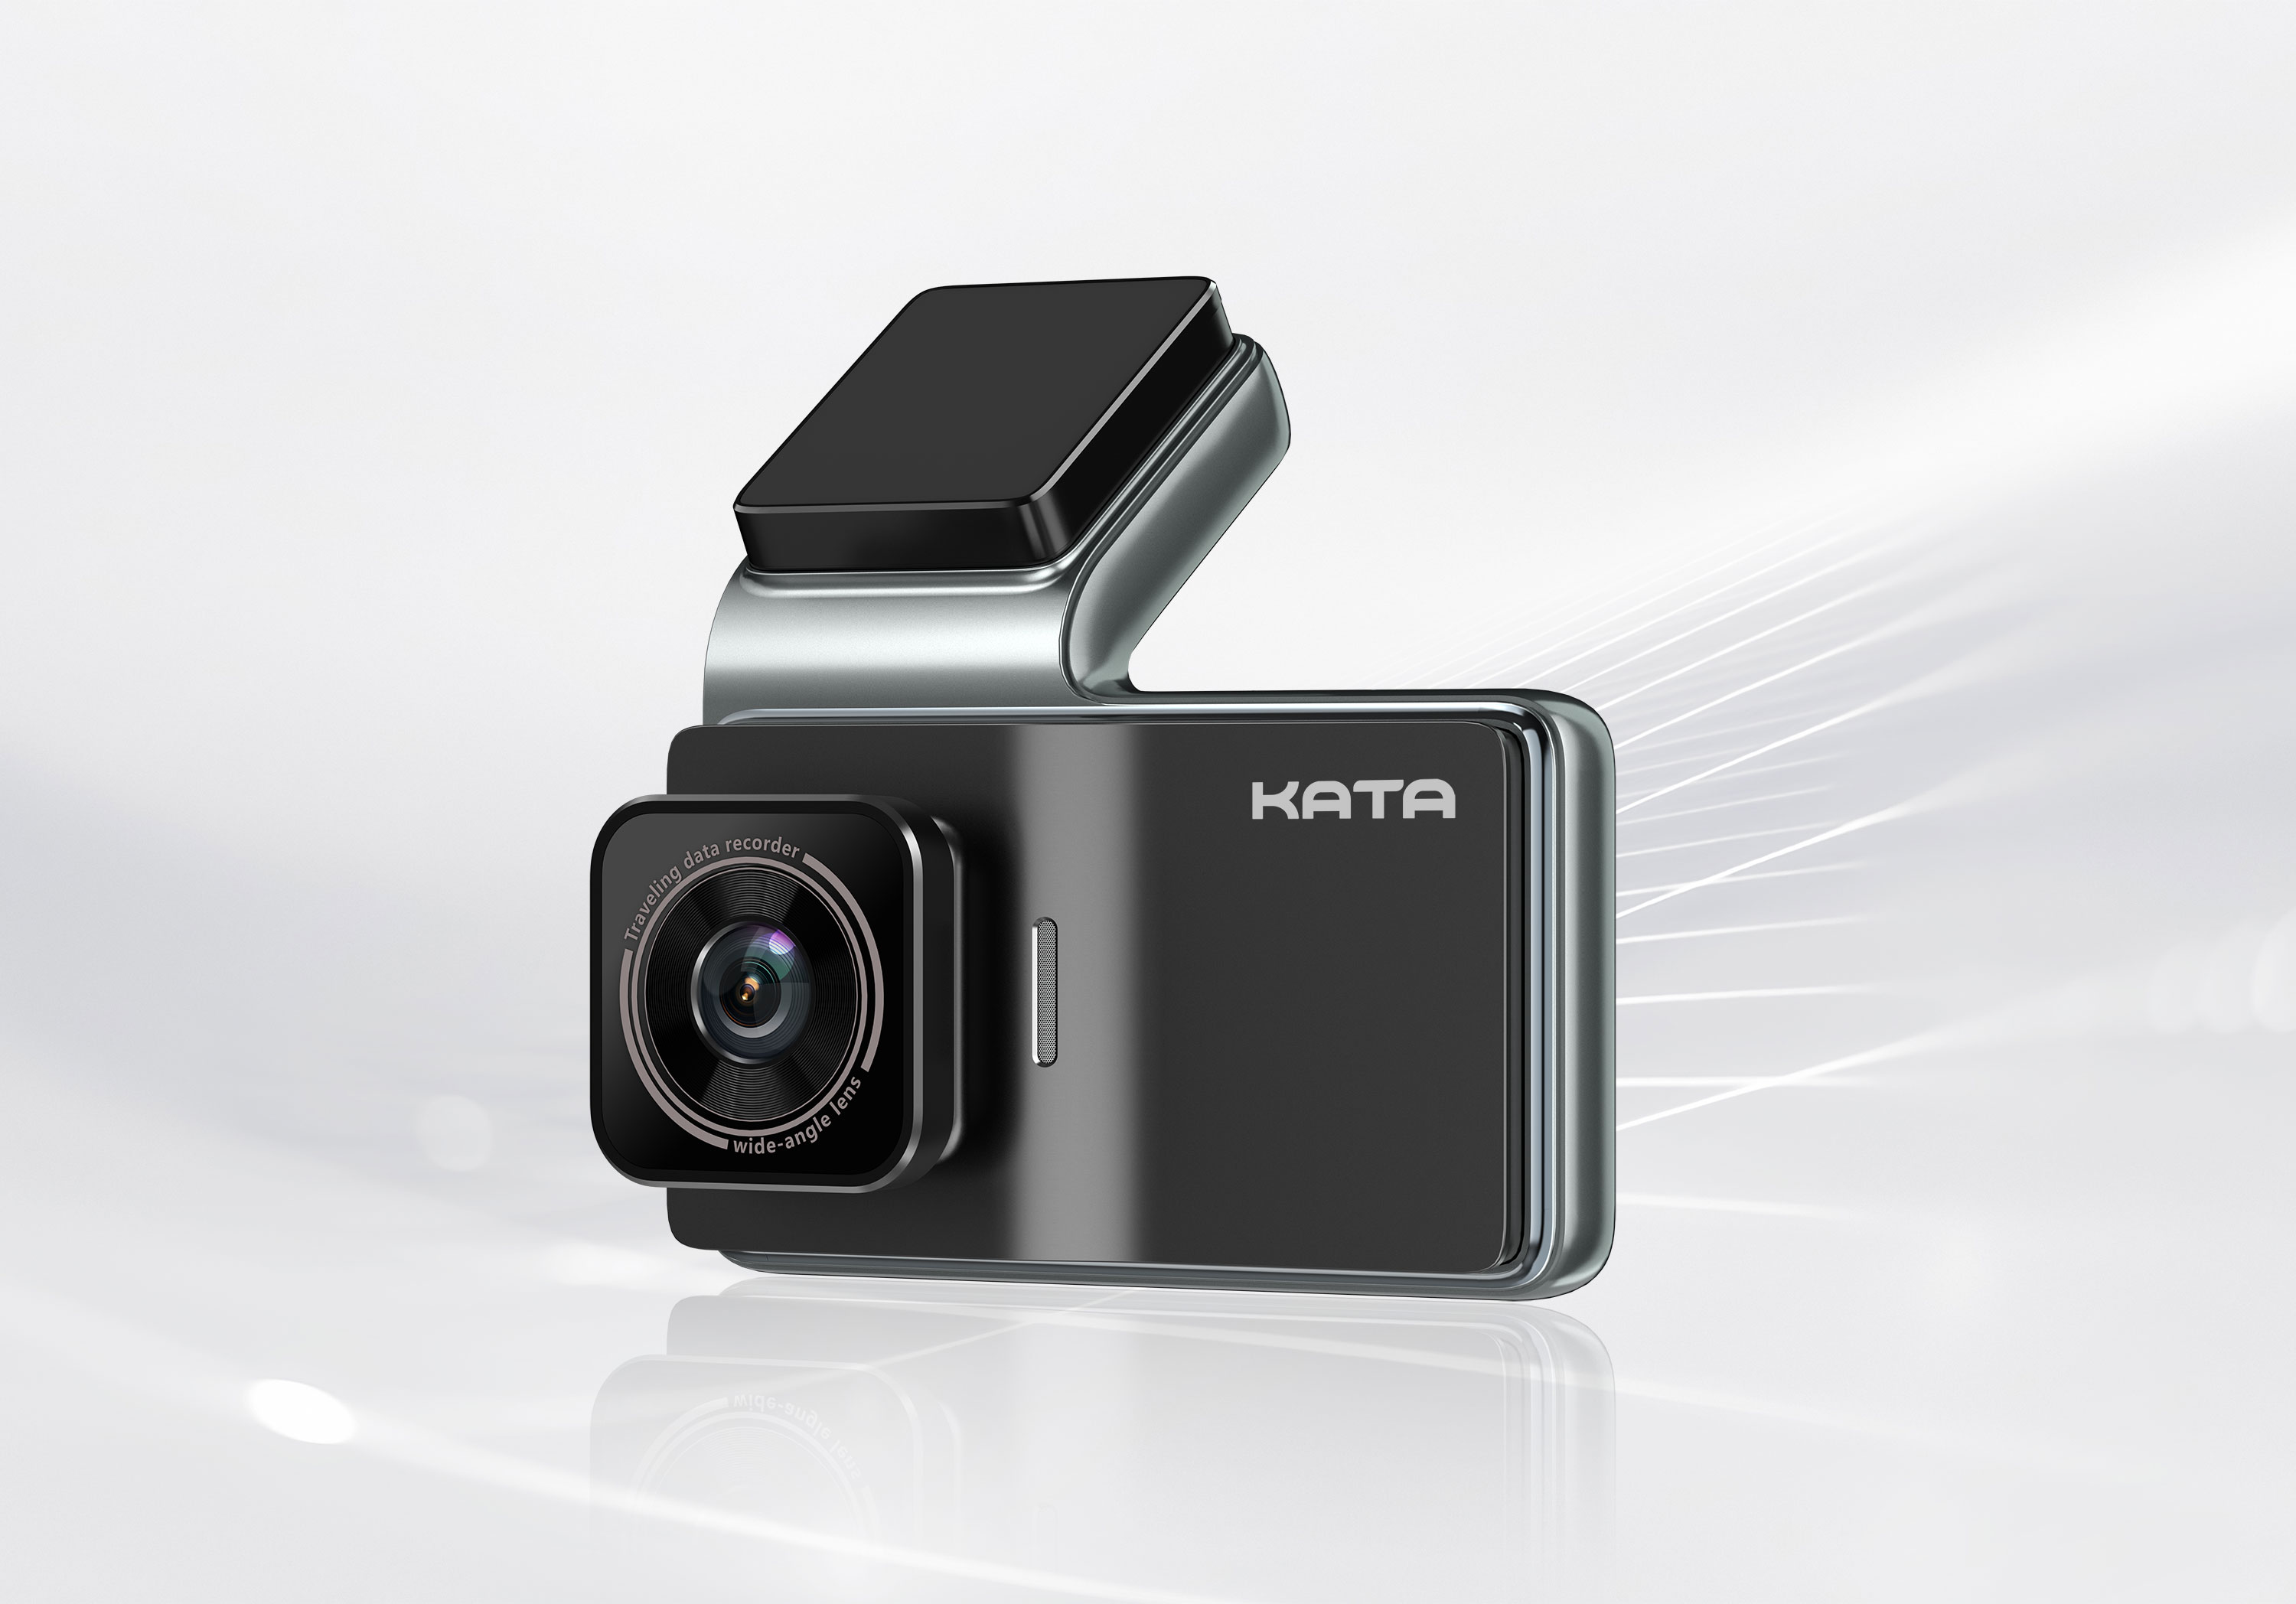 Tích hợp nhiều tính năng thông minh trong camera hành trình KATA KD001